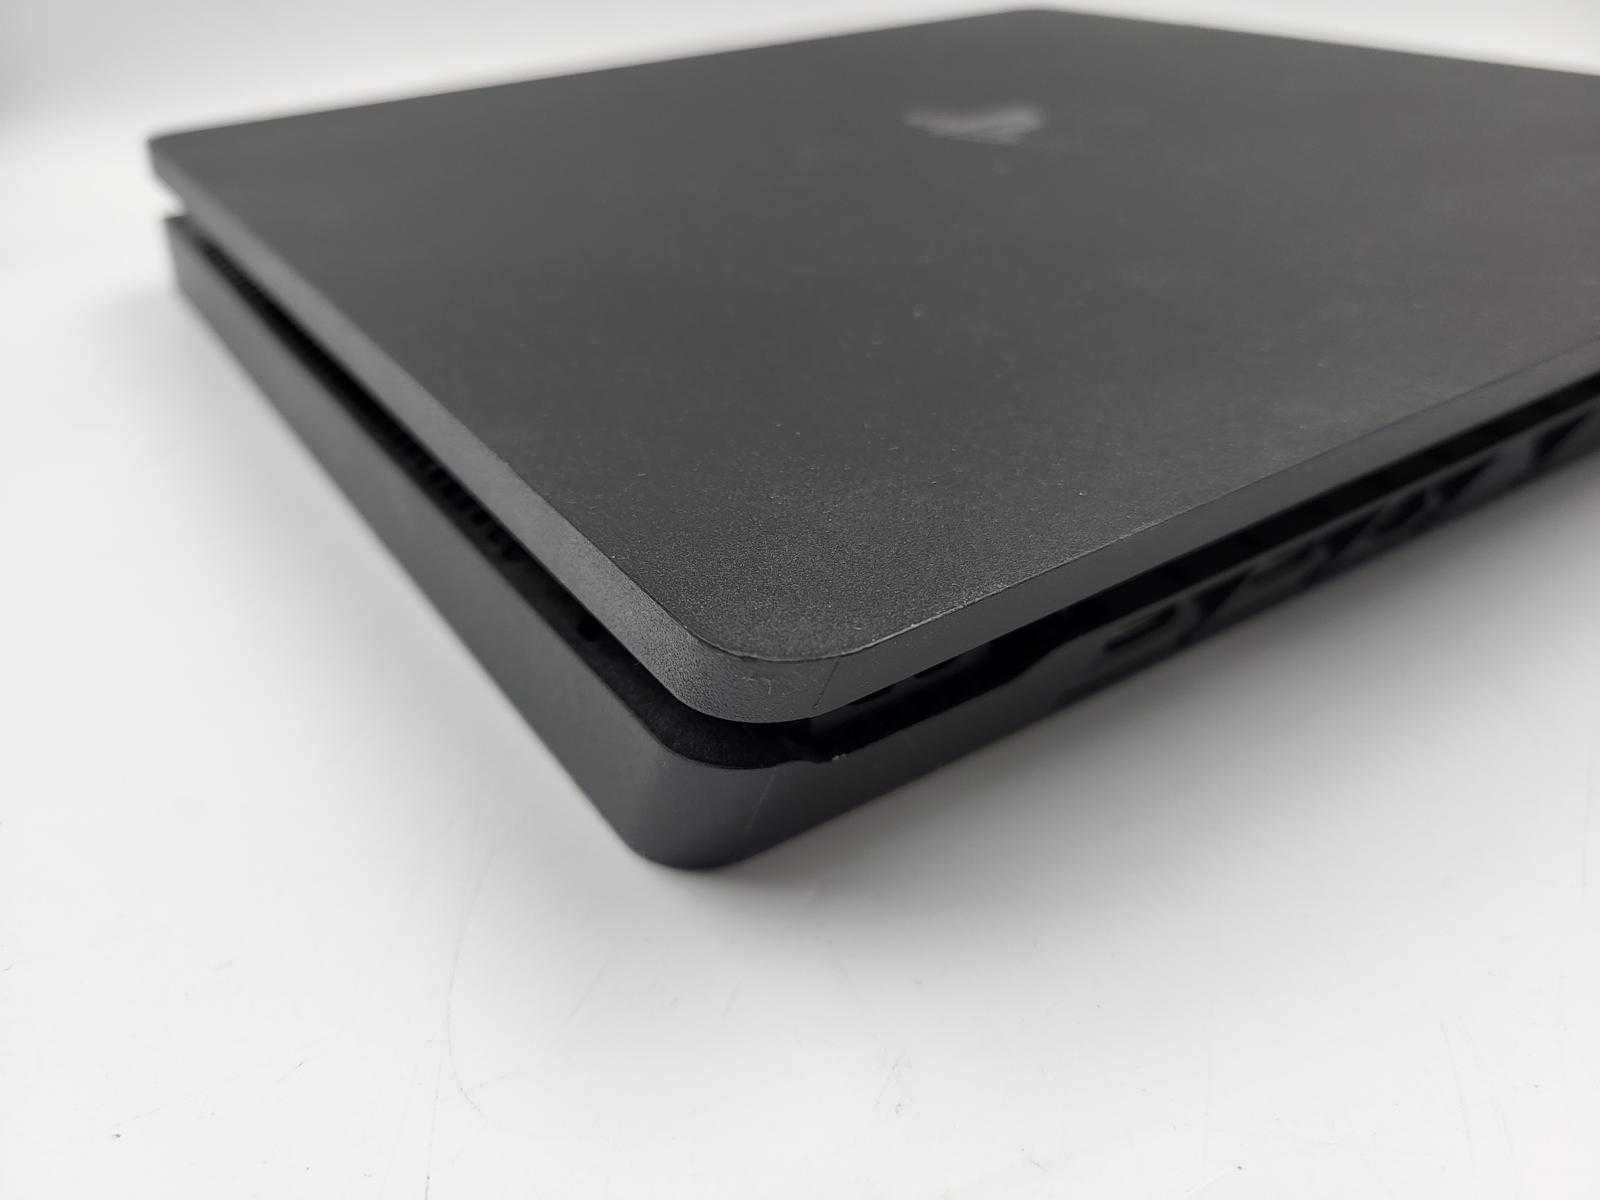 Konsola PS4 Slim 1TB/ 2 x pad/ Kabel zasilający